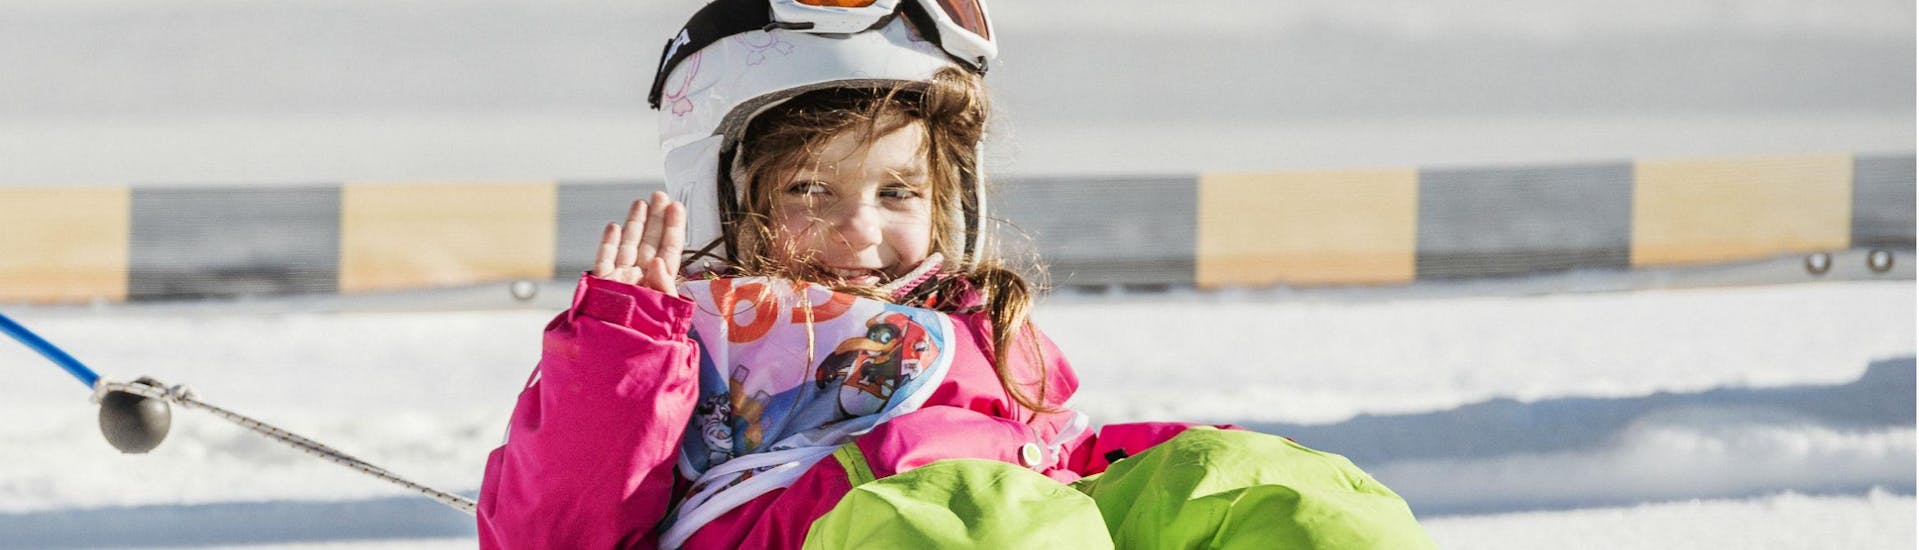 Ein kleines Mädchen im Kinderland von der Skischule Busslehner Achenkirch während dem Kinder-Skikurs "BOBOs Miniclub".